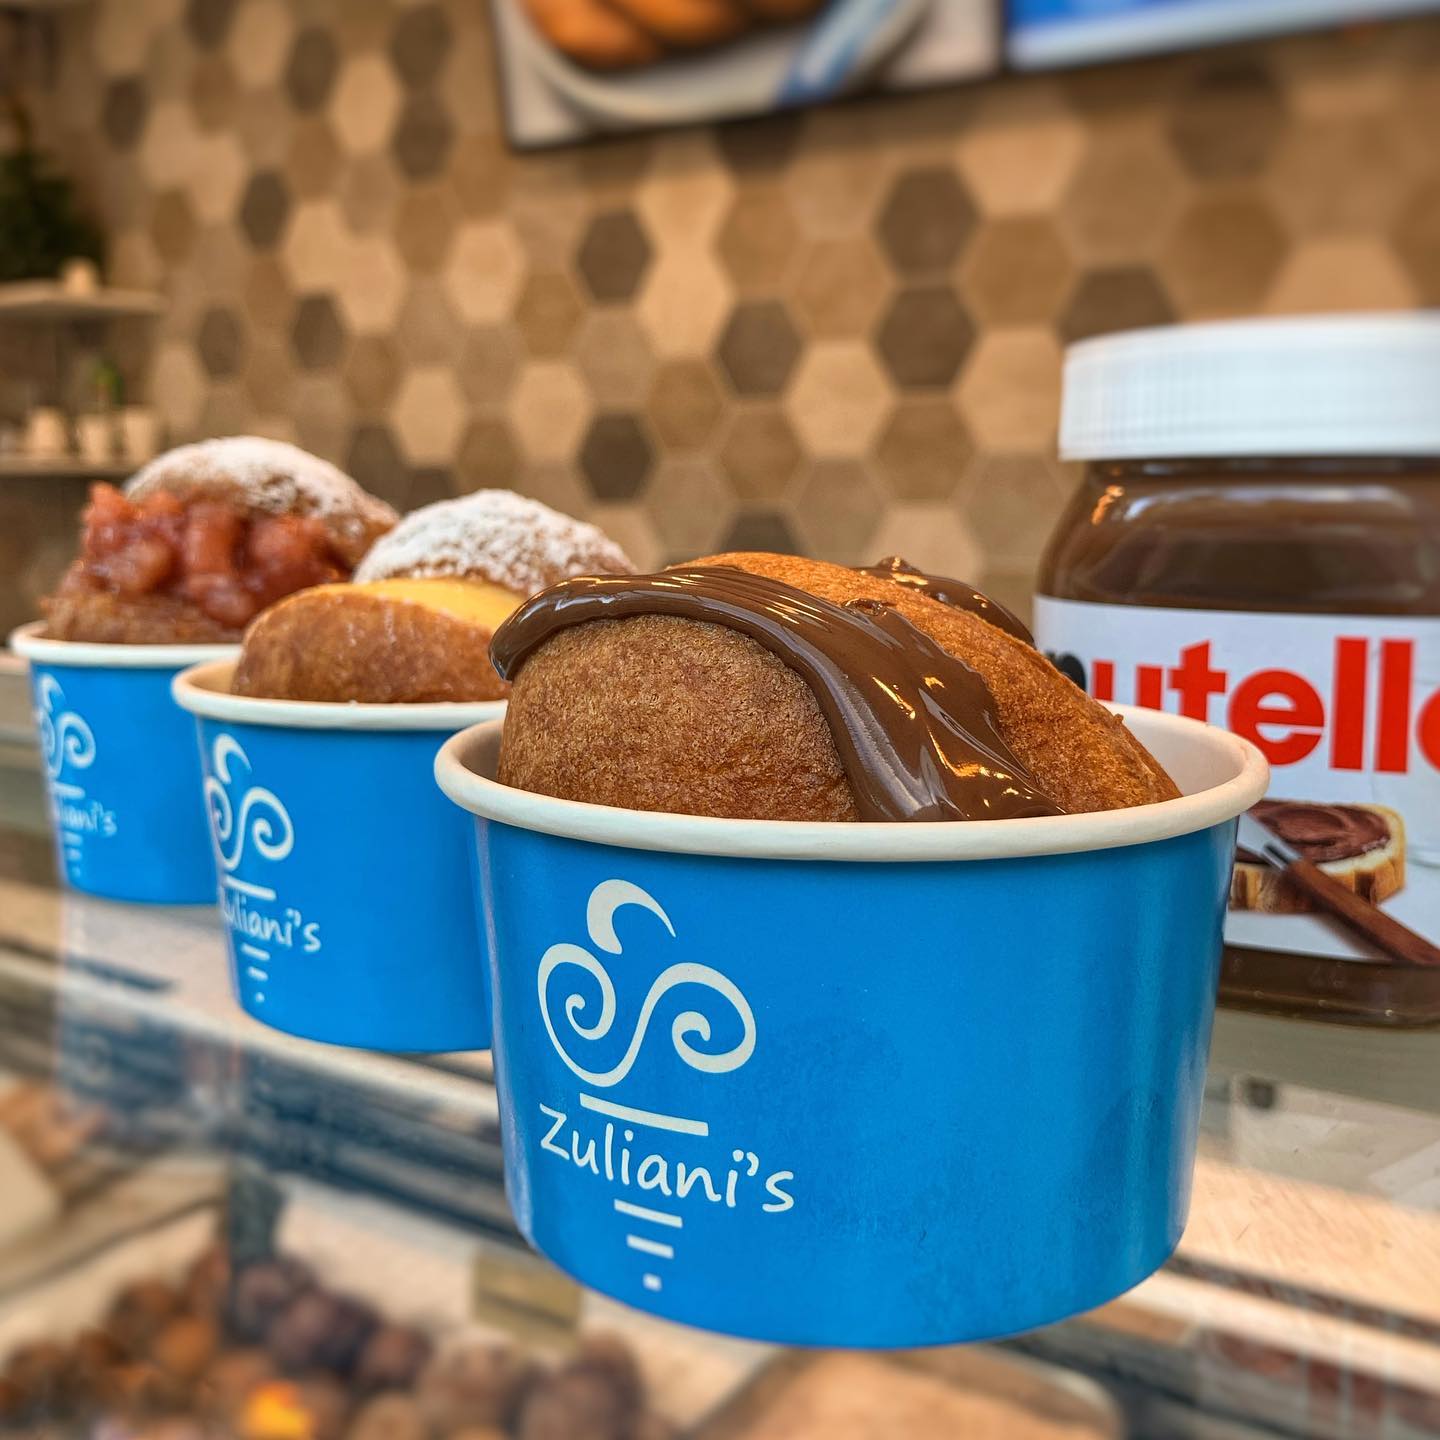 Het weekend staat voor de deur! 🏼 Bij Zuliani’s haal je tijdens het shoppen in @stadshartzmeer een heerlijke gevulde oliebol! Een berlinerbol met bakkersroom, een bol met Hollandse stoofpeertjes of ga voor lekkere warme Nutella! 🏼